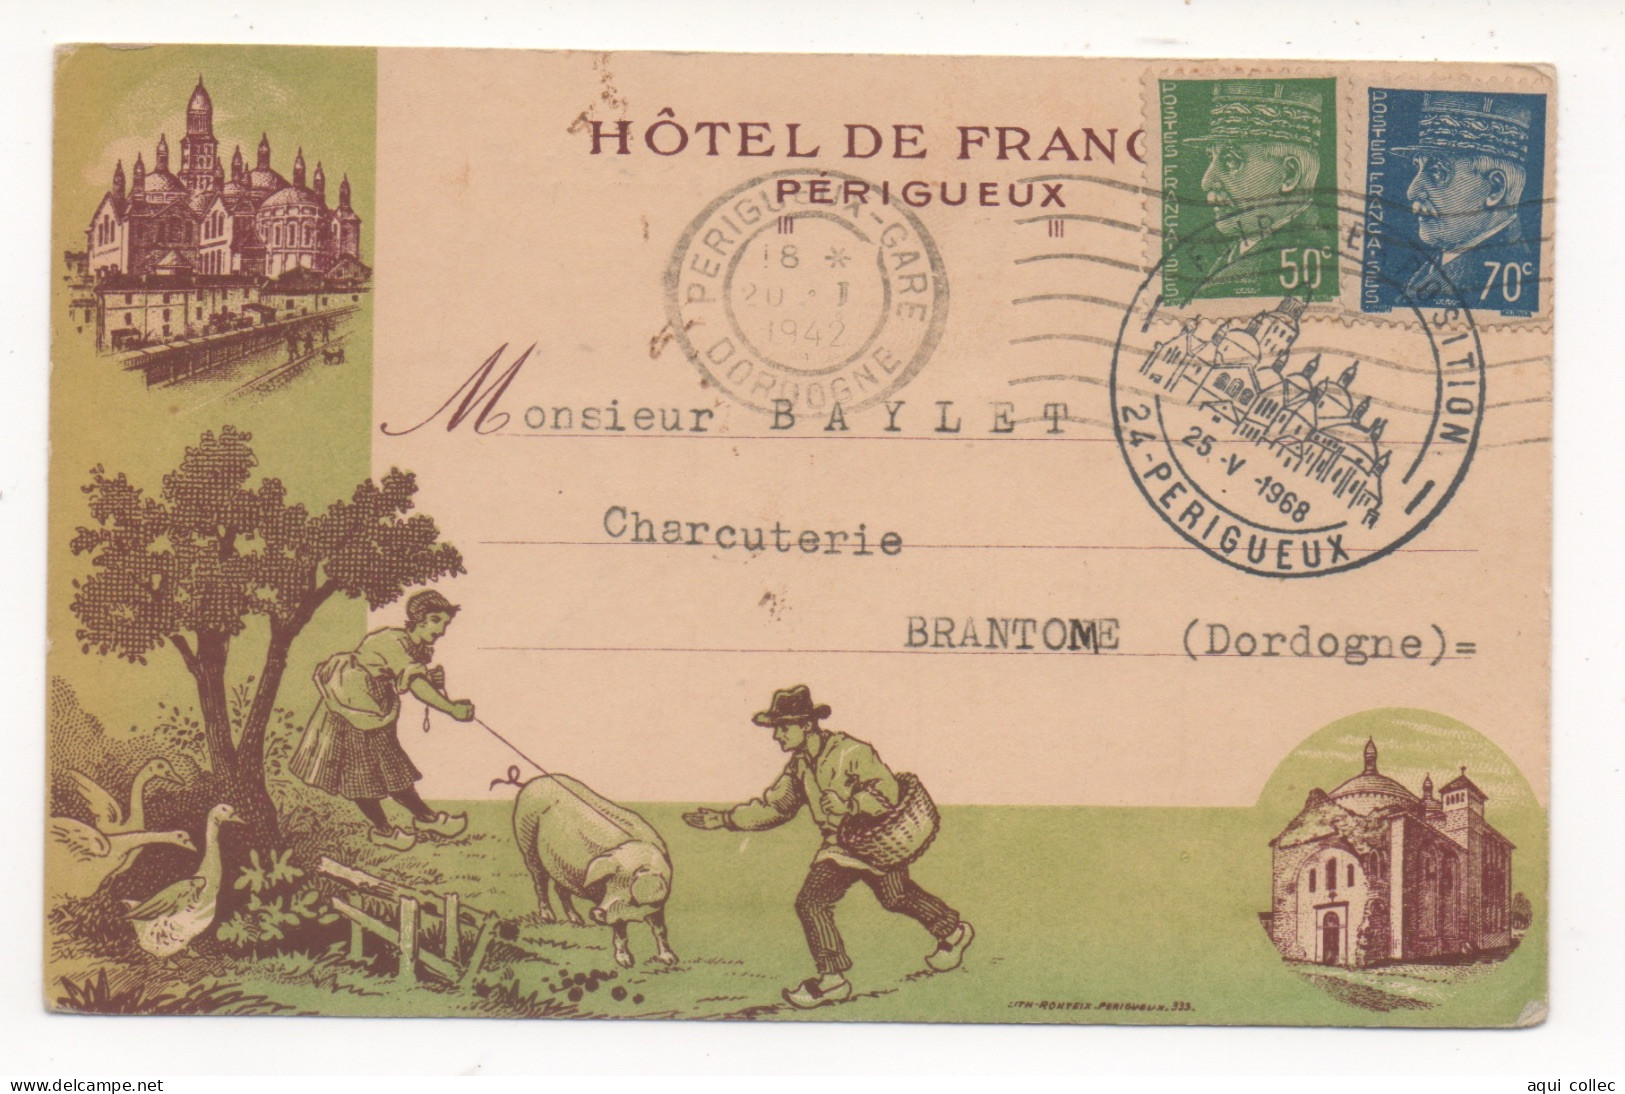 PERIGUEUX    24  DORDOGNE PERIGORD  HOTEL DE FRANCE - MONSIEUR BAYLET - CHARCUTERIE - BRANTOME - Périgueux